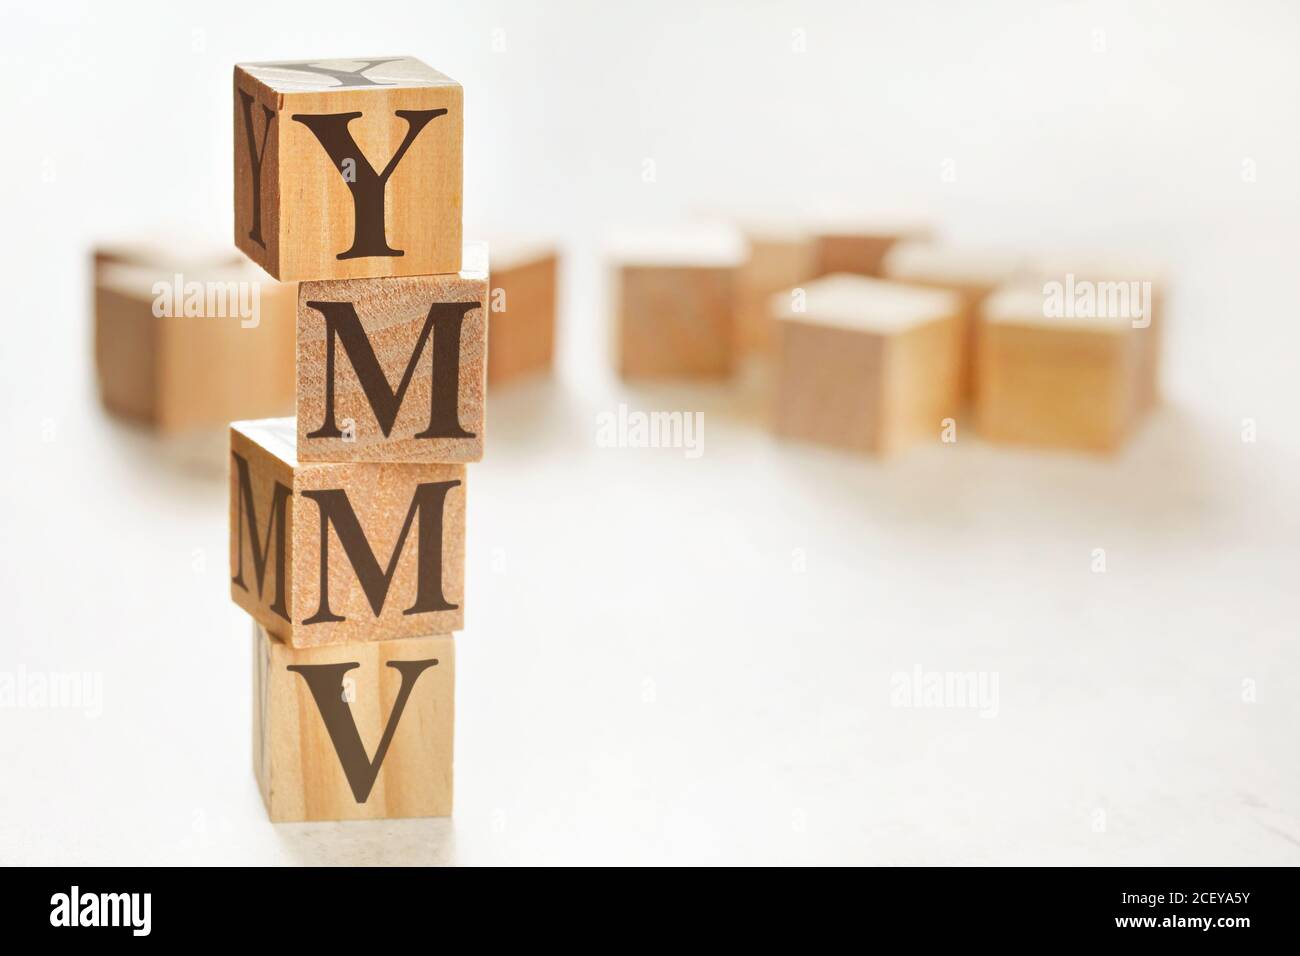 Quattro cubi di legno disposti in pila con lettere YMMV (il che significa che il chilometraggio può variare) su di essi, spazio per testo / immagine in basso a destra angolo Foto Stock